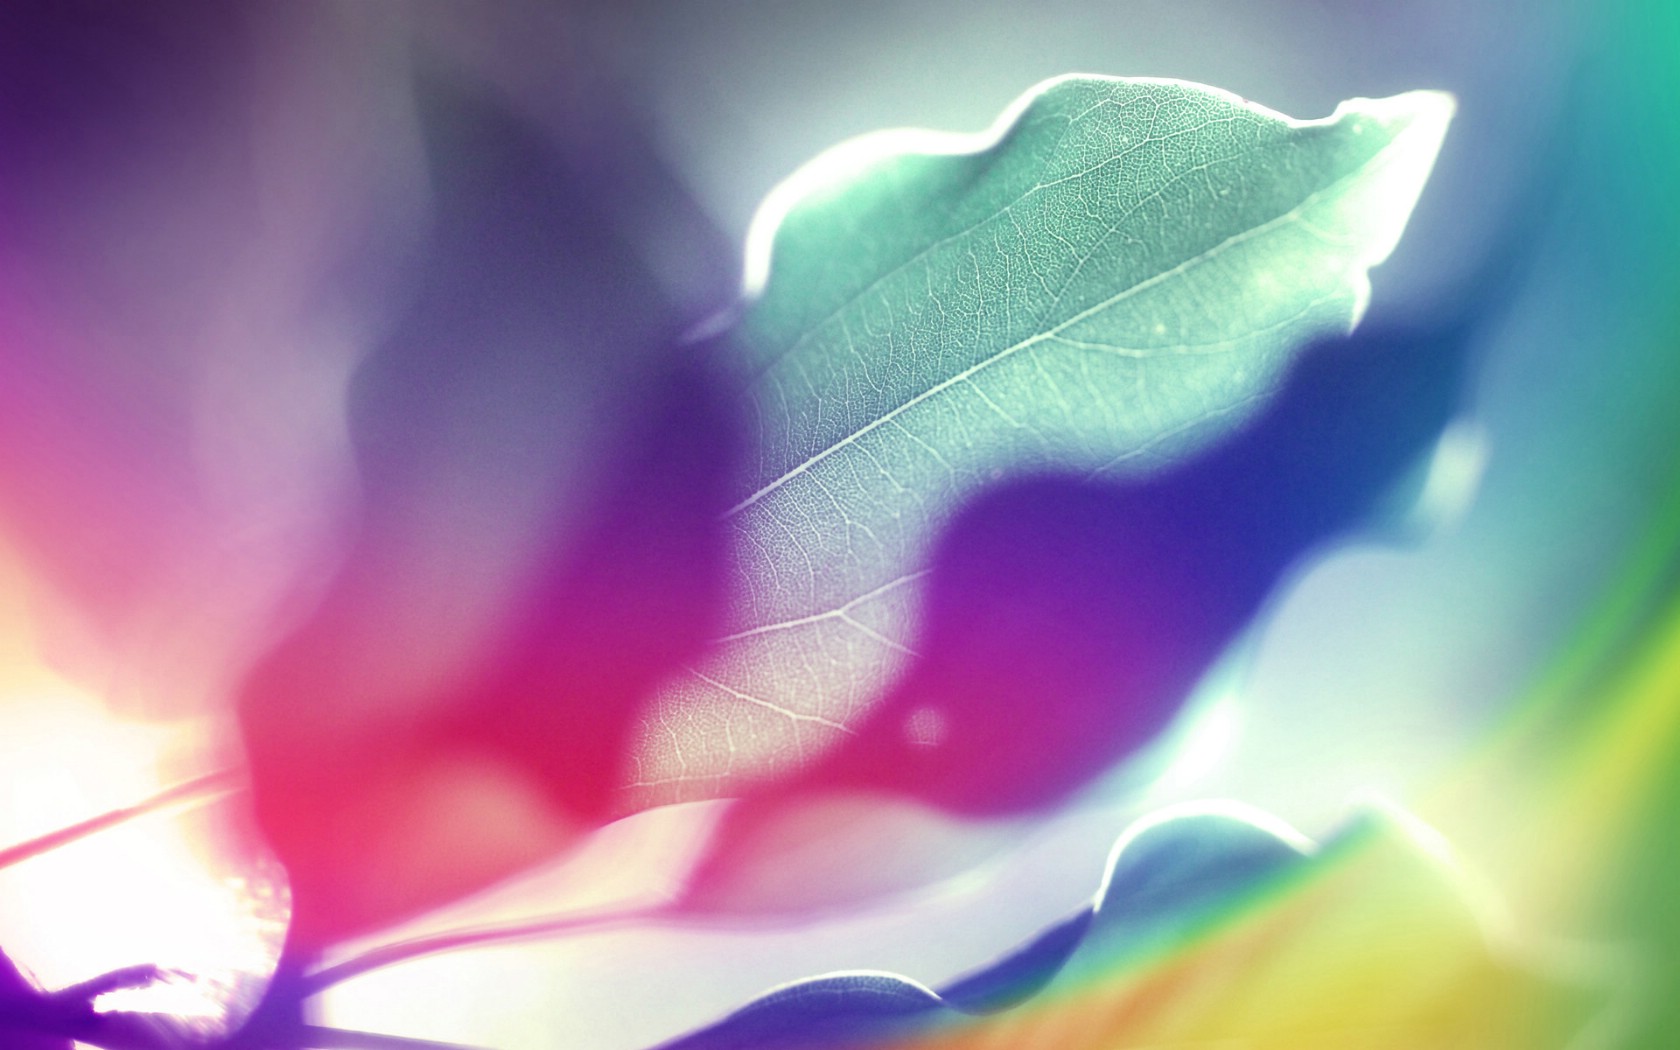 壁纸1680x1050抽象背景 彩虹之色 阳光下的叶子 视觉色彩背景壁纸 抽象背景 彩虹之色壁纸 抽象背景 彩虹之色图片 抽象背景 彩虹之色素材 插画壁纸 插画图库 插画图片素材桌面壁纸